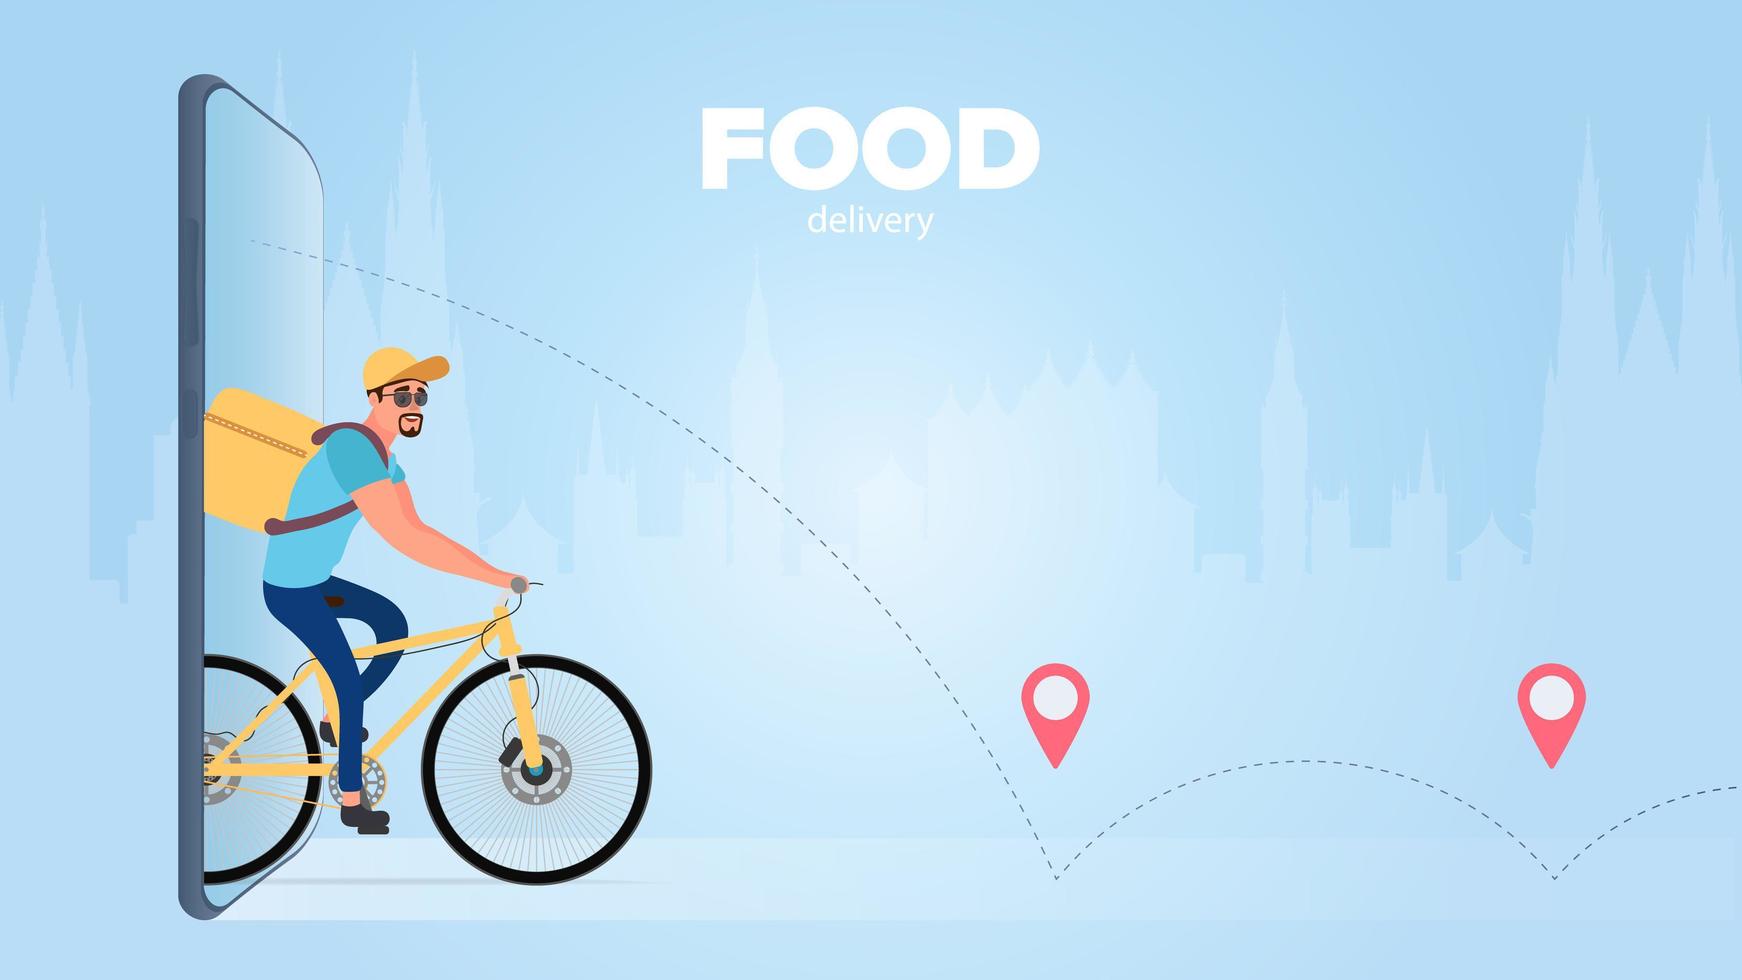 maaltijdbezorging op de fiets. de man rijdt op een fiets. het concept van voedselbezorging op fietsen. telefonisch bestellen van goederen. vectorillustratie. vector